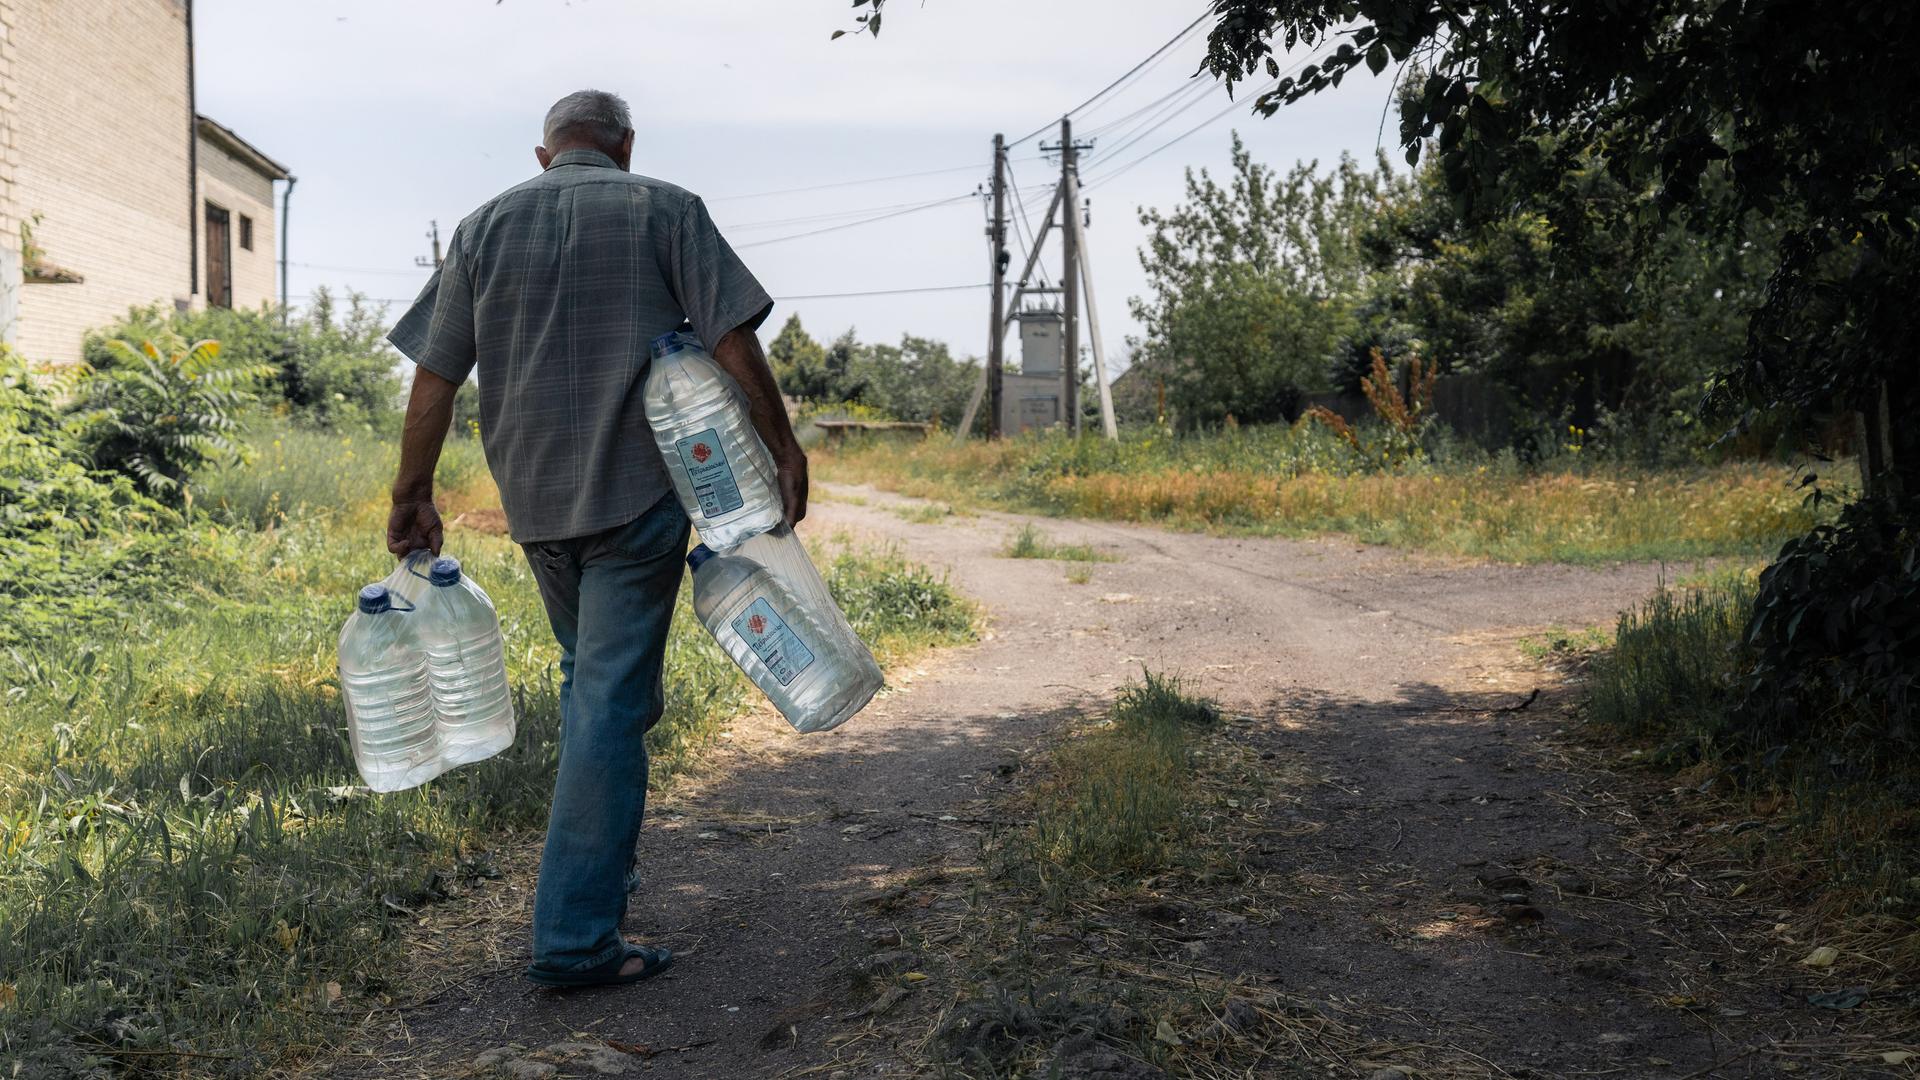 Zu sehen ist ein Mann, der große Wasserflaschen in den Händen und unter den Armen trägt. Er geht einen unbefestigten Weg entlang, der zwischen Strommasten und einem Gebäude verläuft.